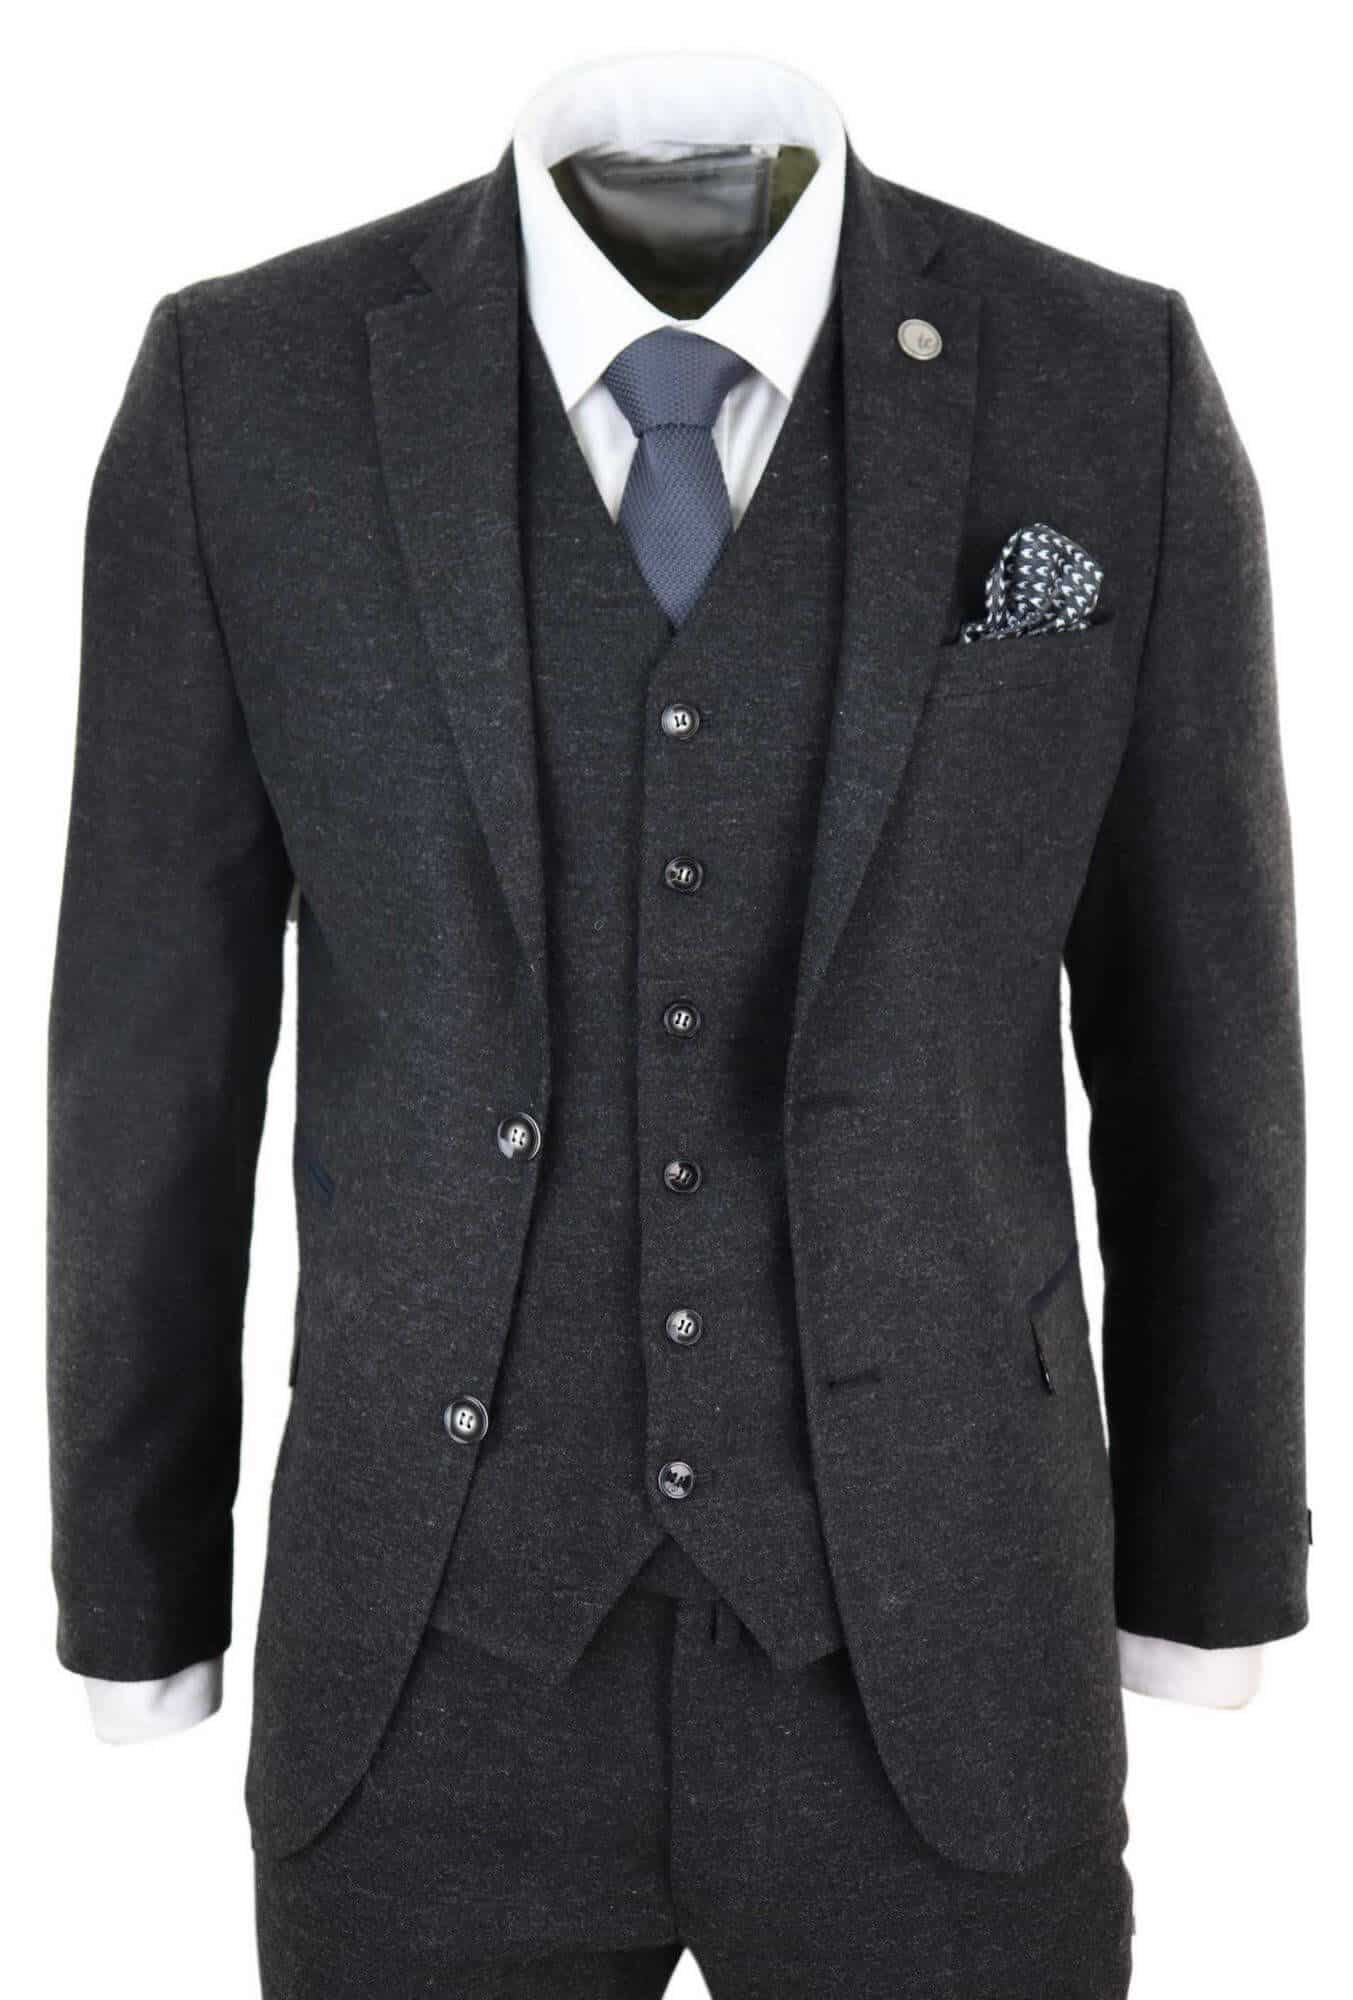 Mens Black Vintage 1920s Suit: Buy Online - Happy Gentleman